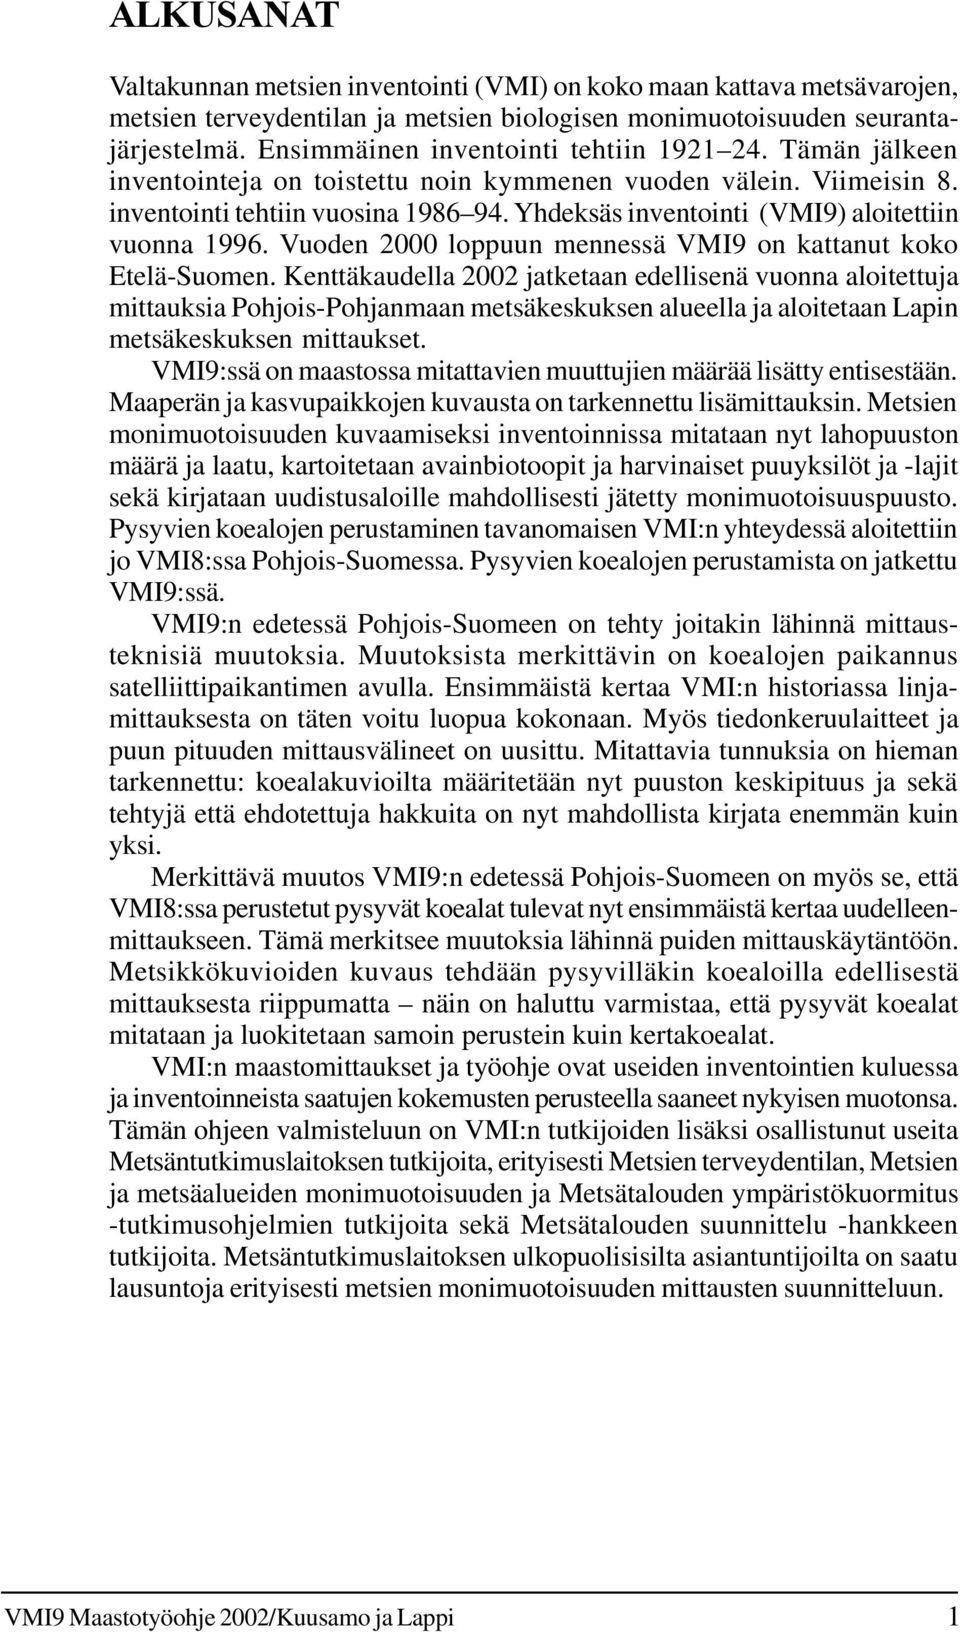 Vuoden 2000 loppuun mennessä VMI9 on kattanut koko Etelä-Suomen.